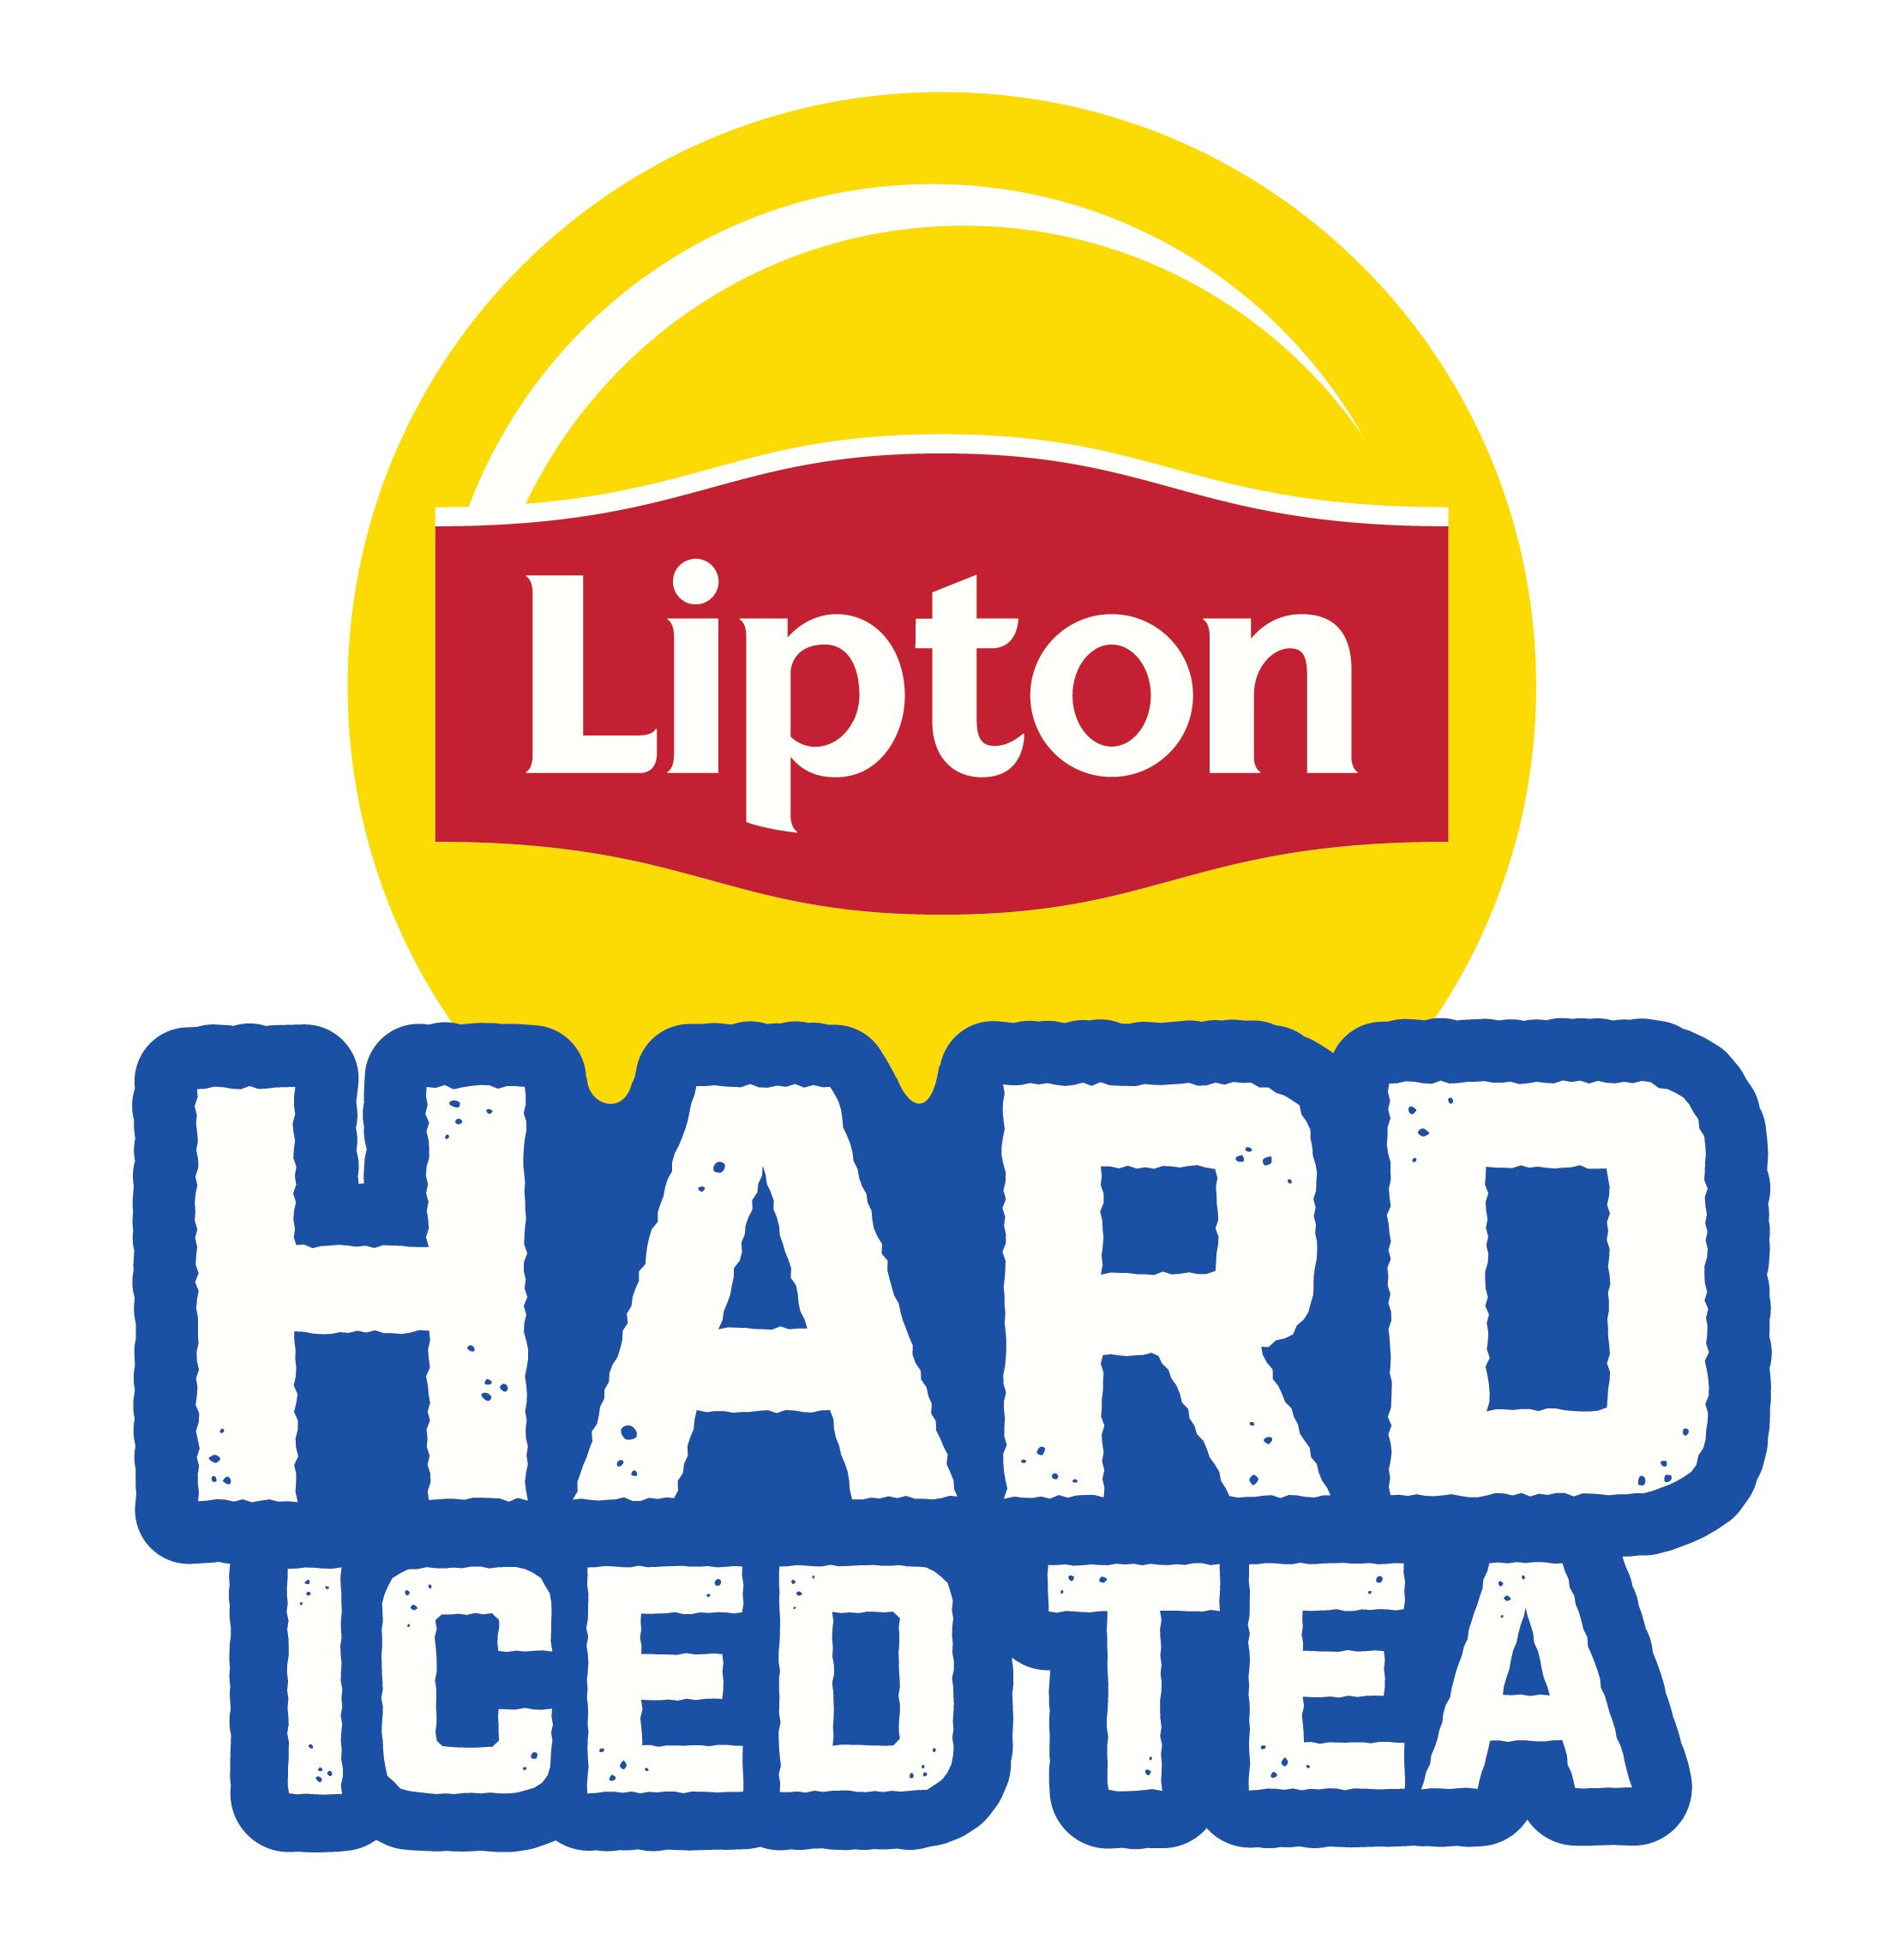 Lipton Hard Iced Tea Logo